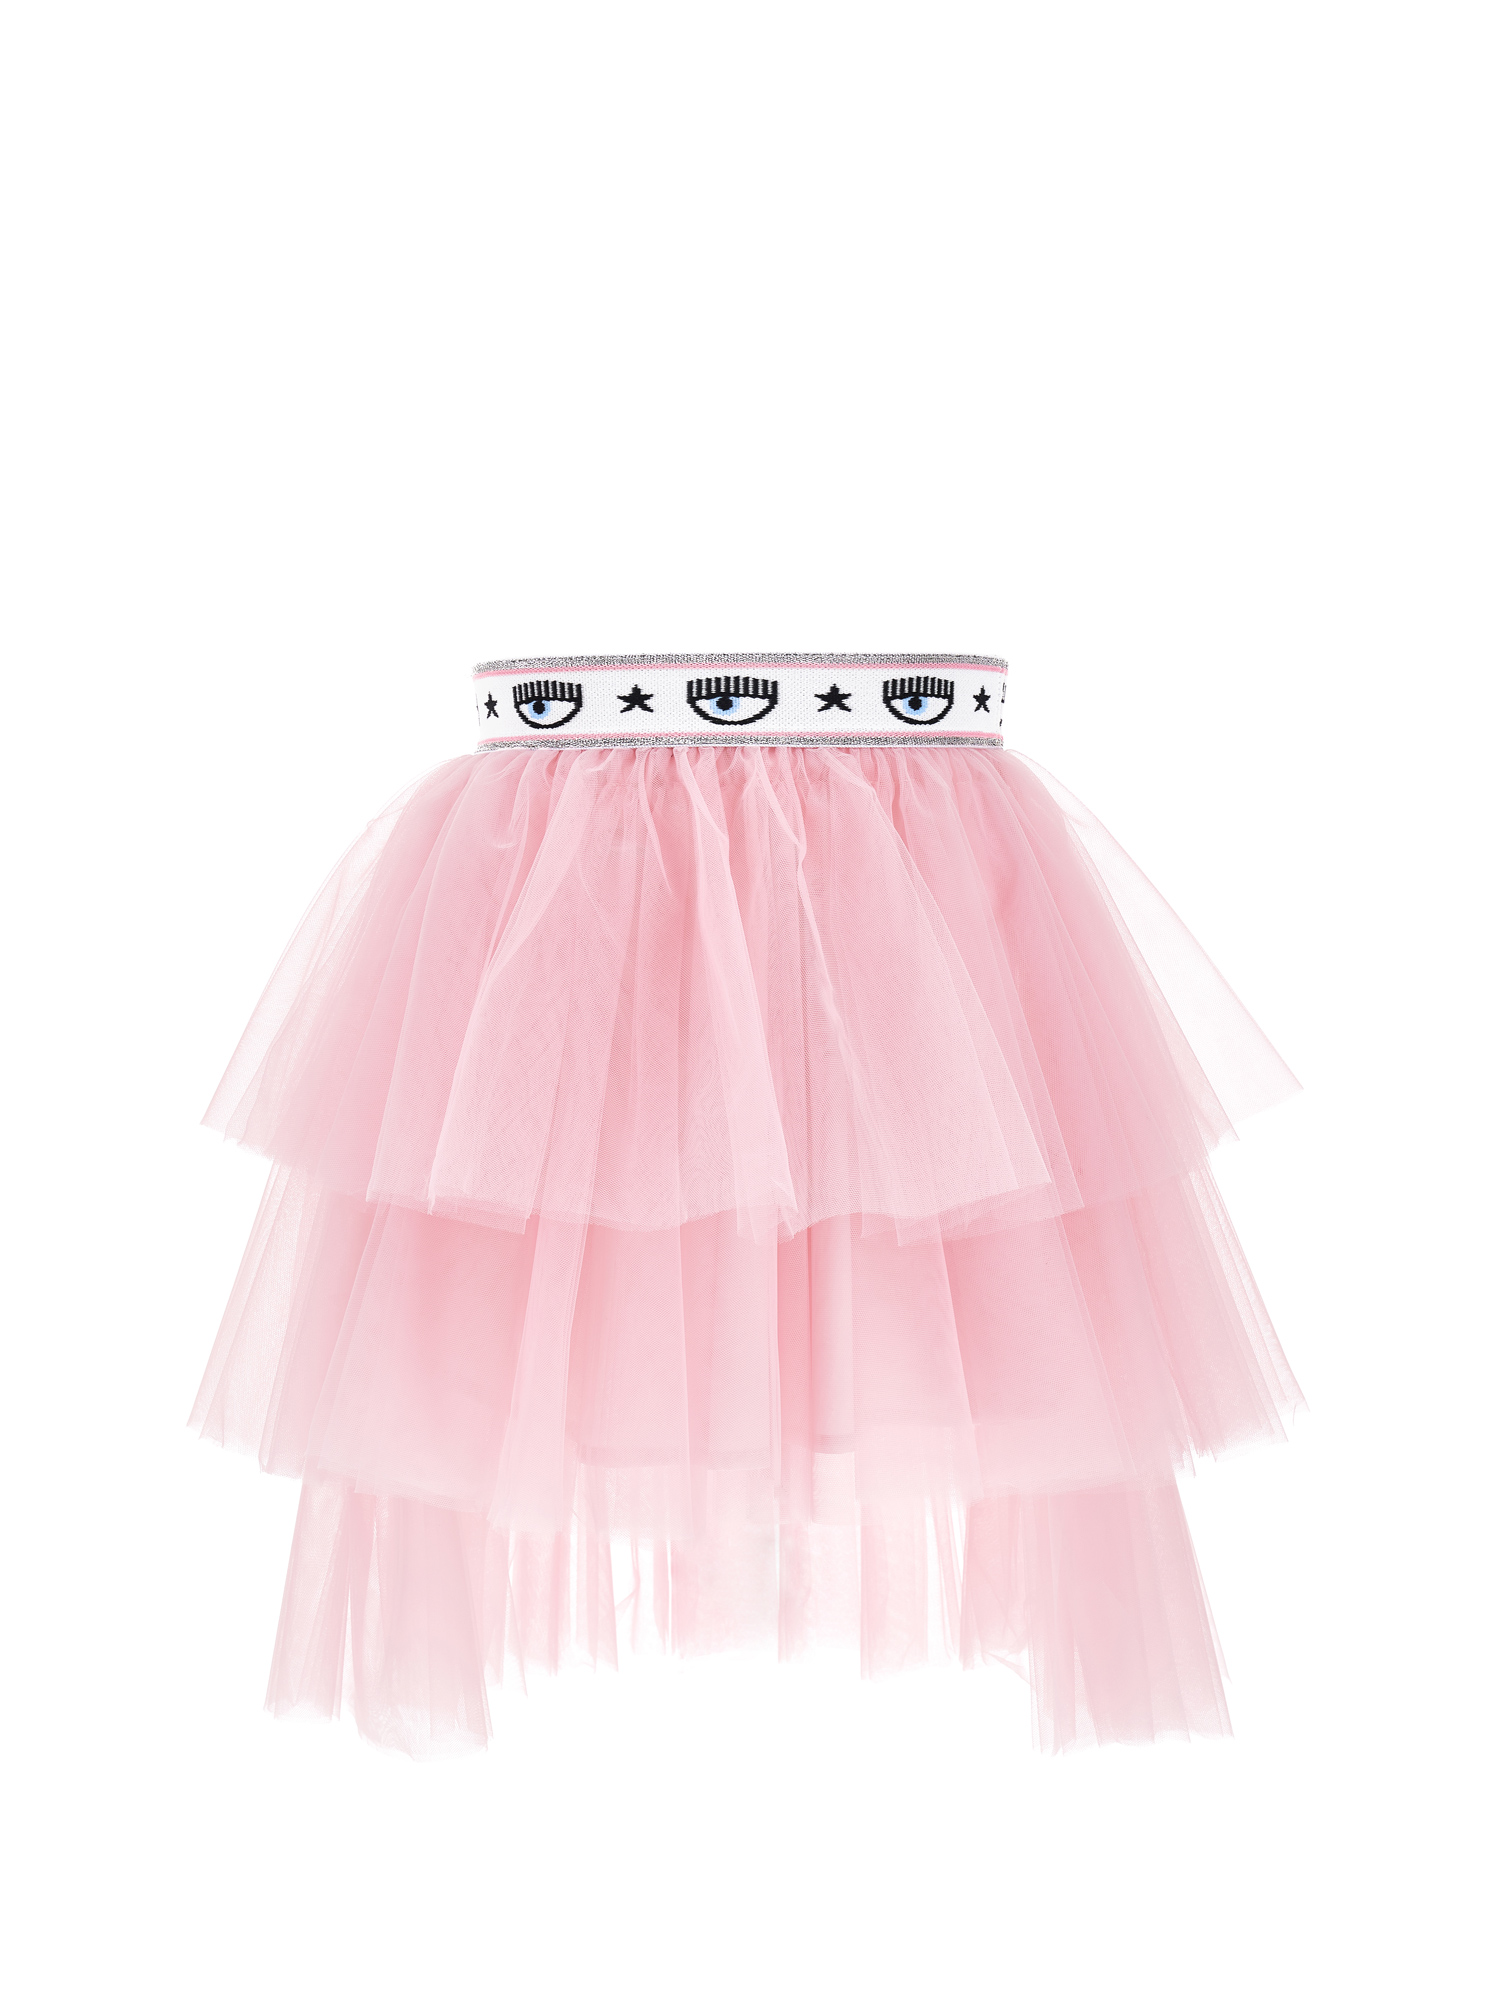 Chiara Ferragni Maxilogomania Tulle Skirt In Rosa Fairy Tale